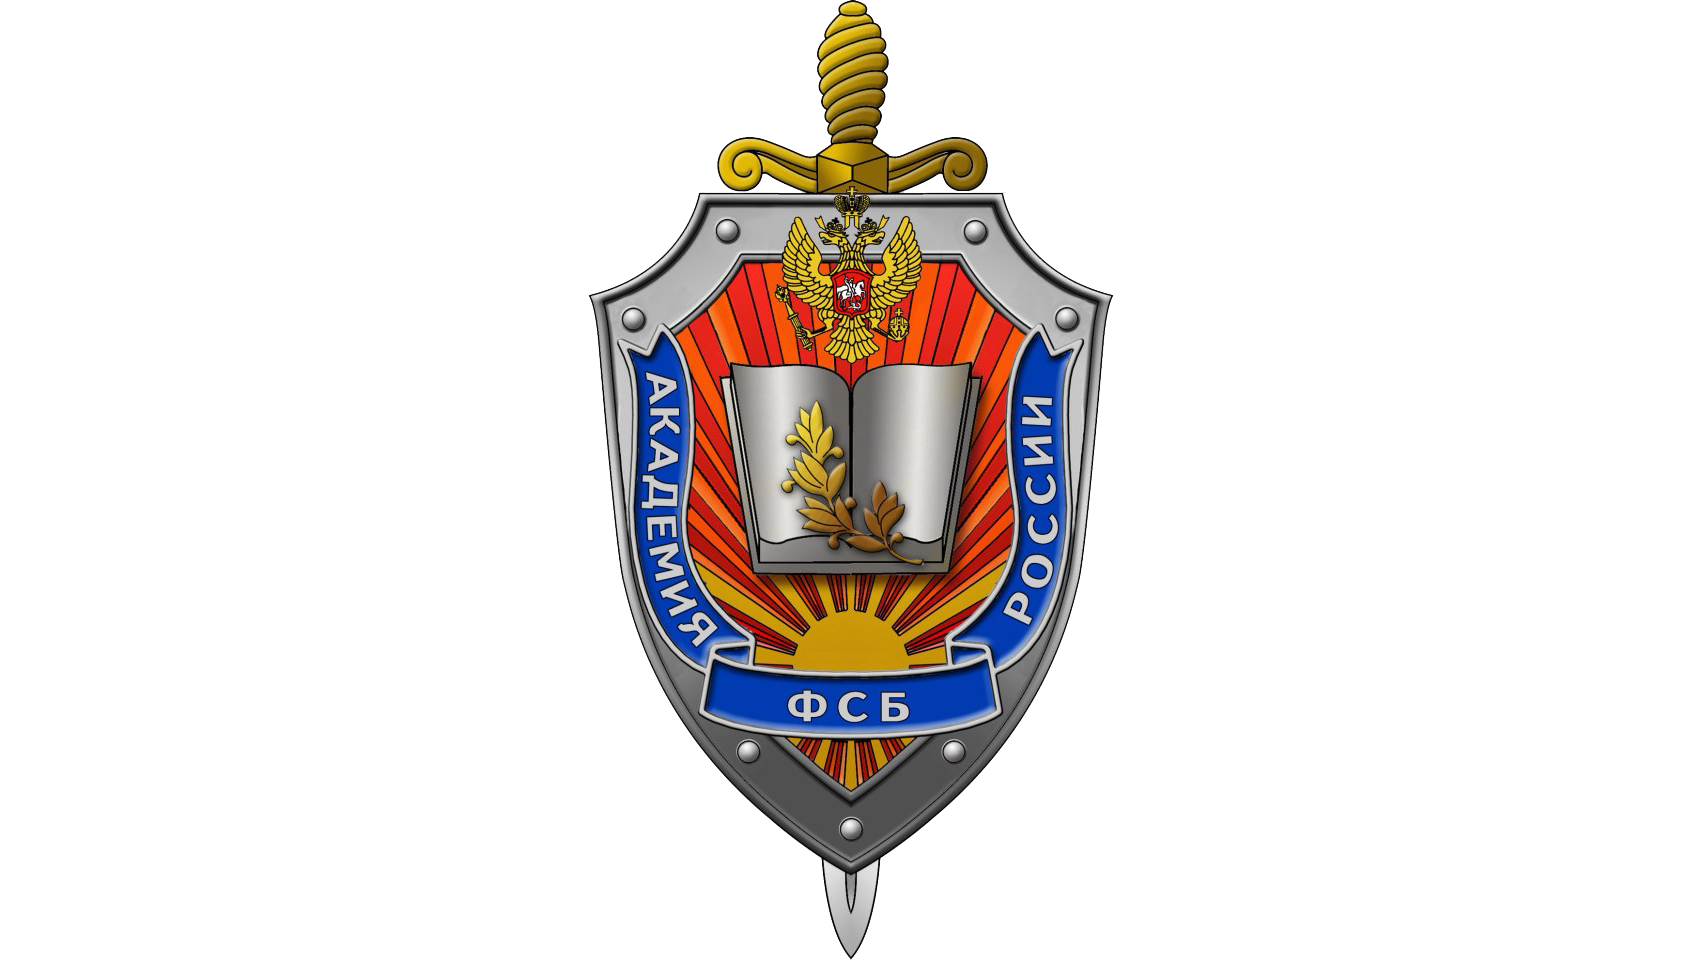 Форма органов безопасности. Академия Федеральной службы безопасности Российской Федерации.